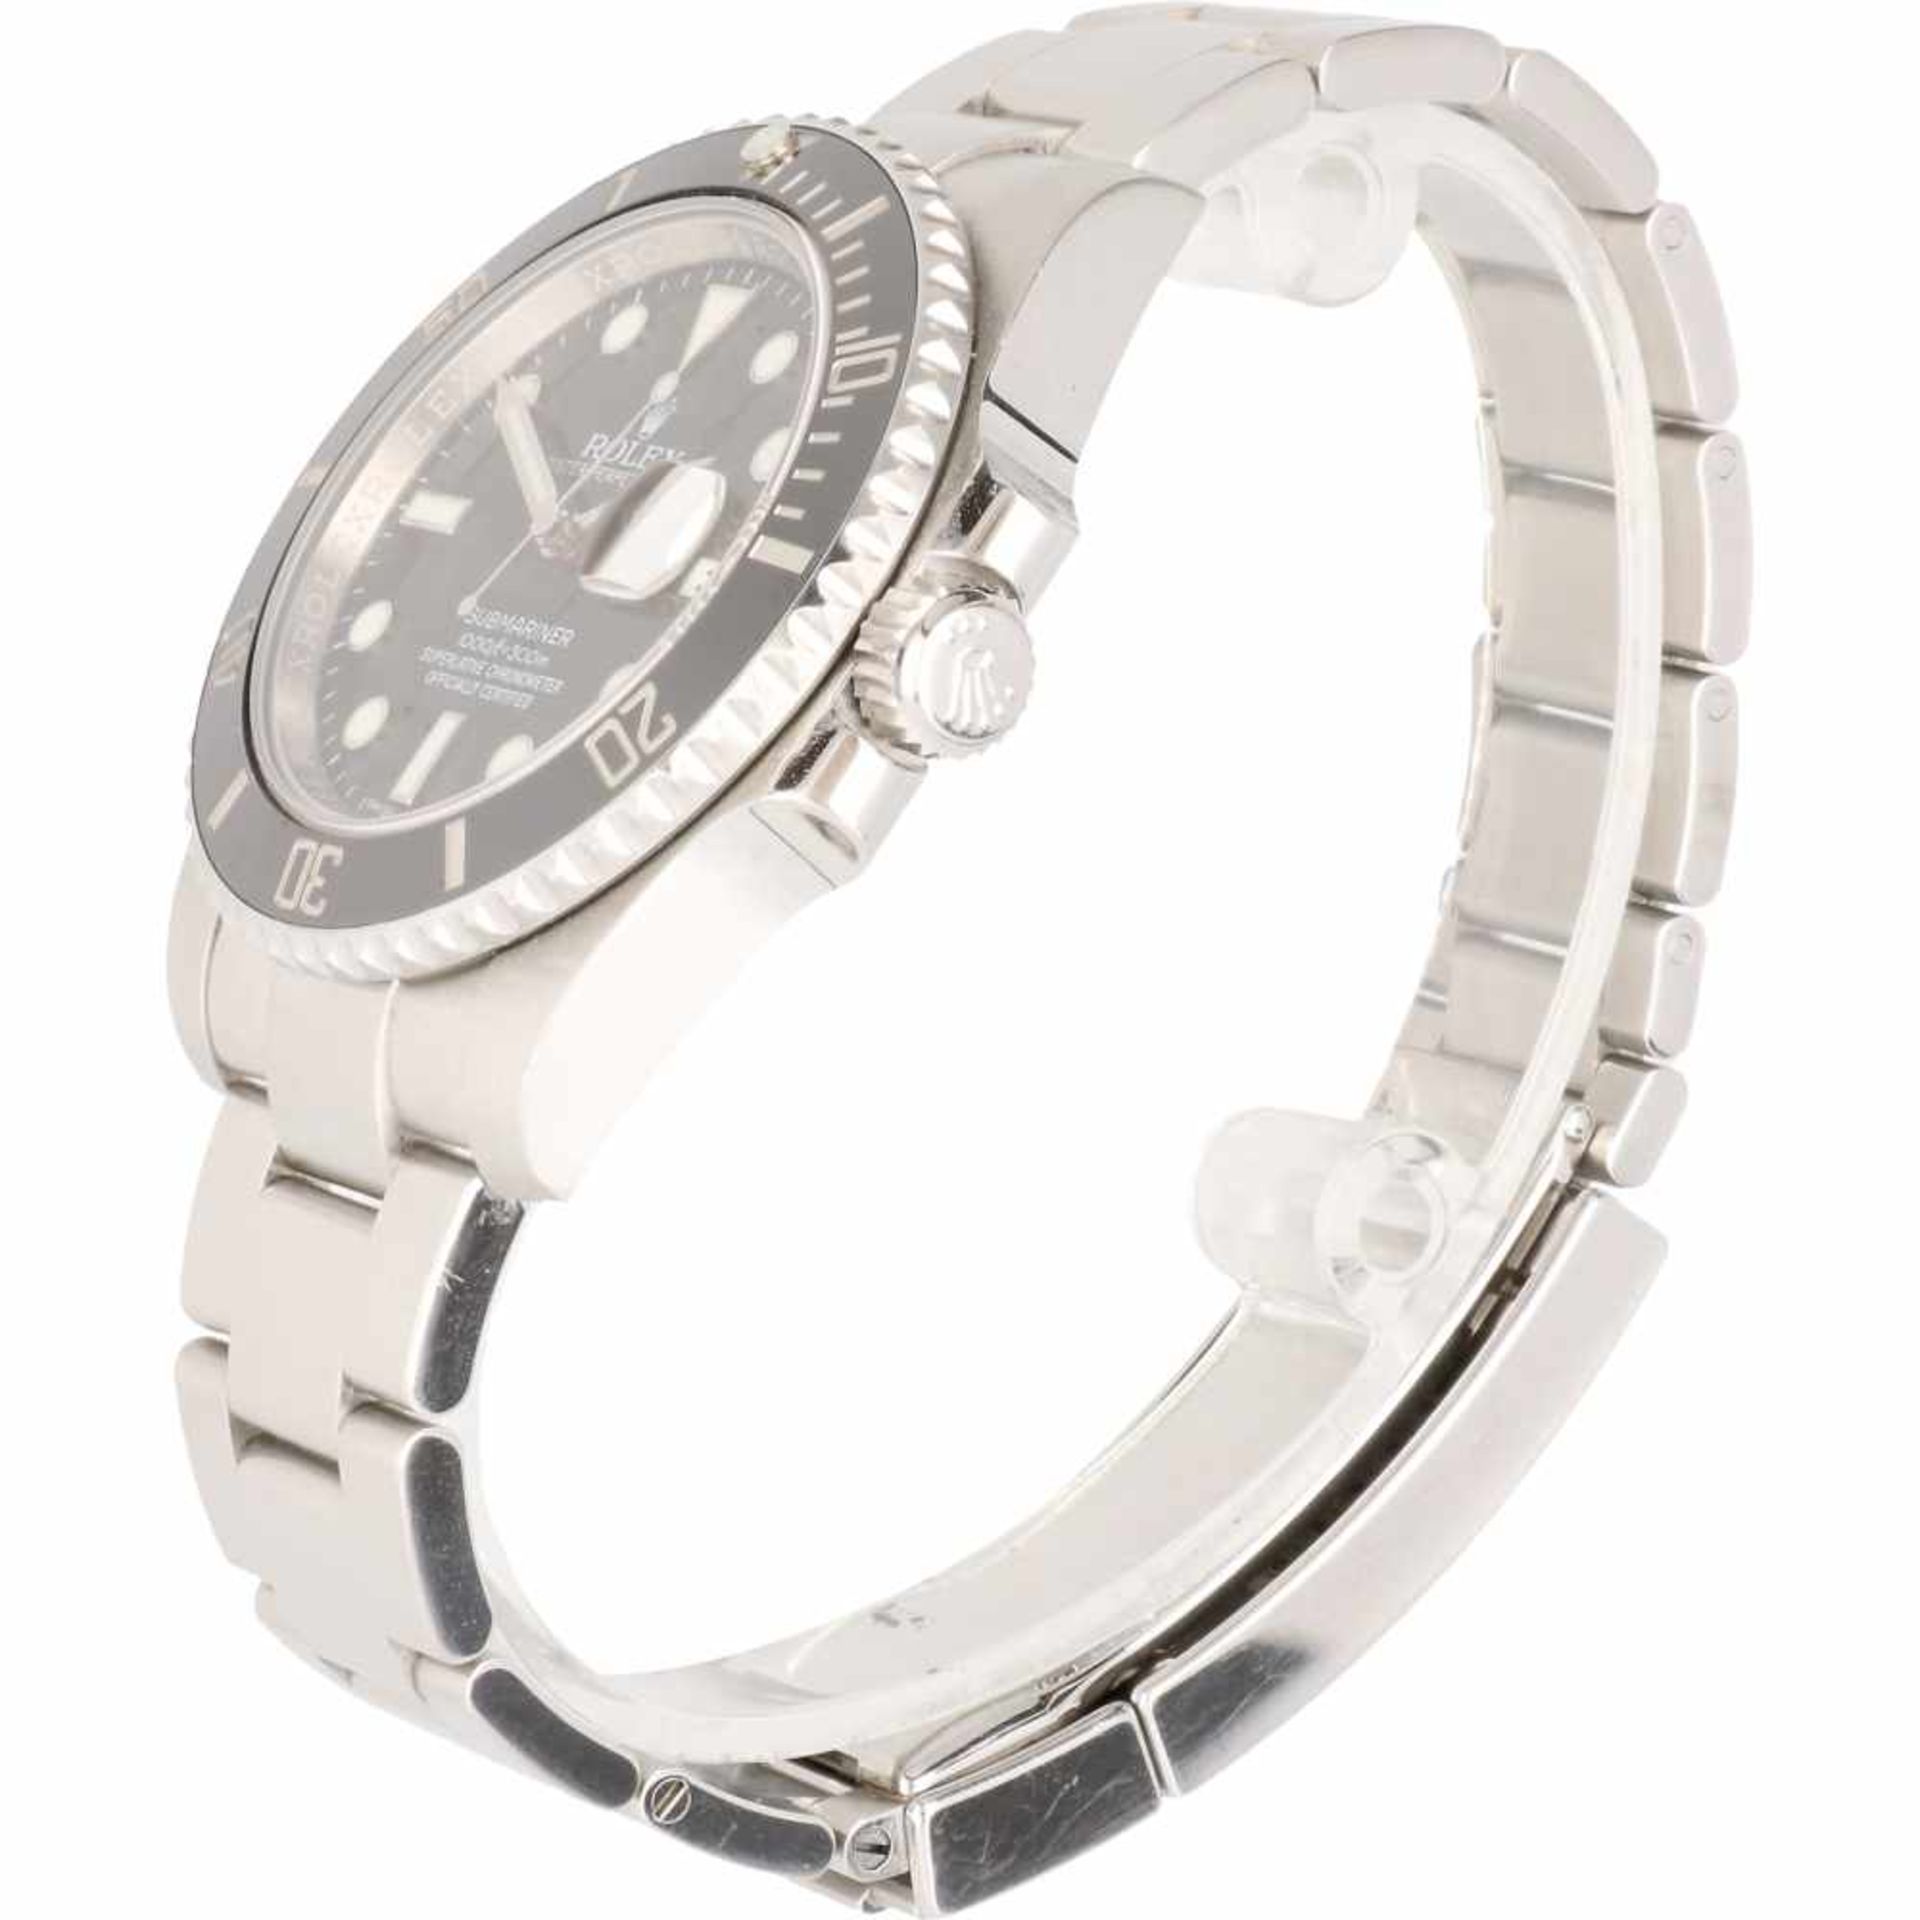 Rolex Submariner 116610 - Men's watch - Automatic - Ca. 2011. - Bild 4 aus 6